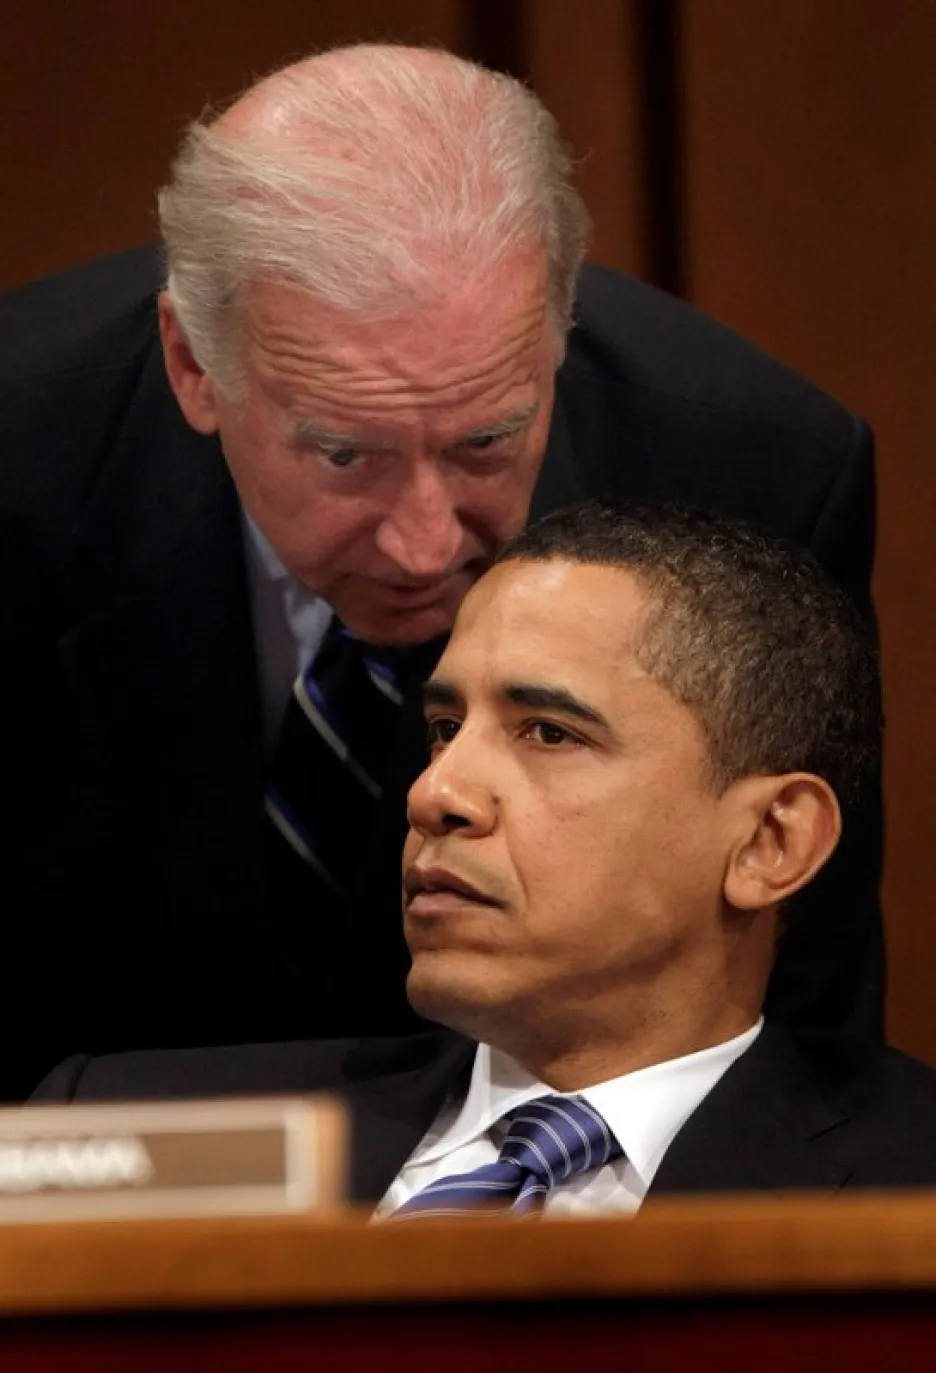 Joe Biden a Barack Obama